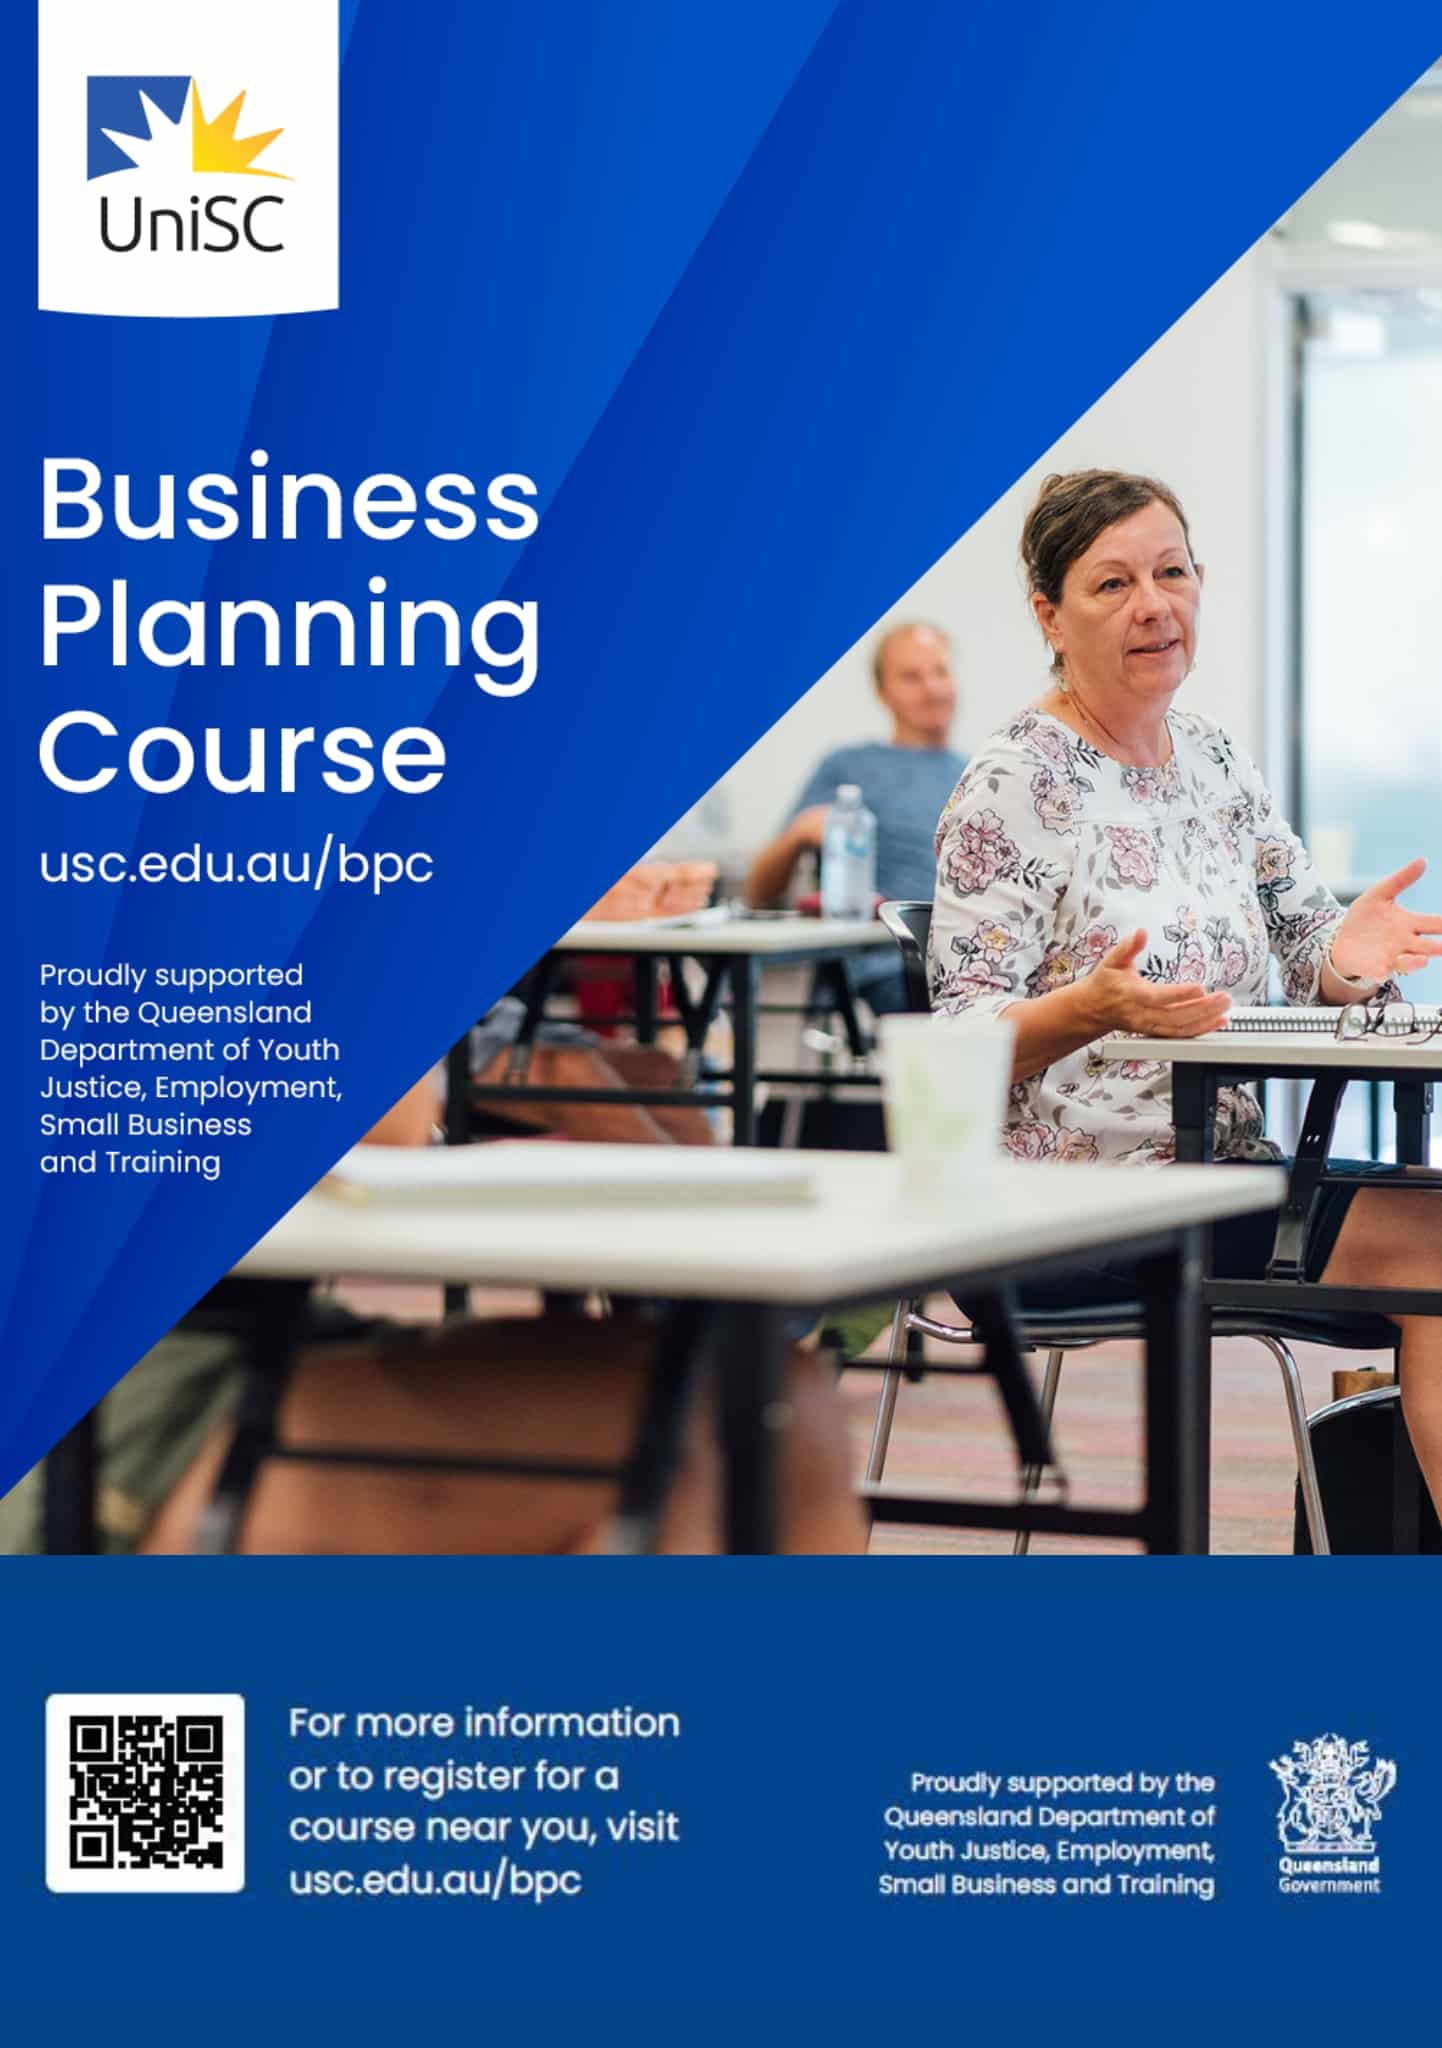 UniSC Business PLanning Course